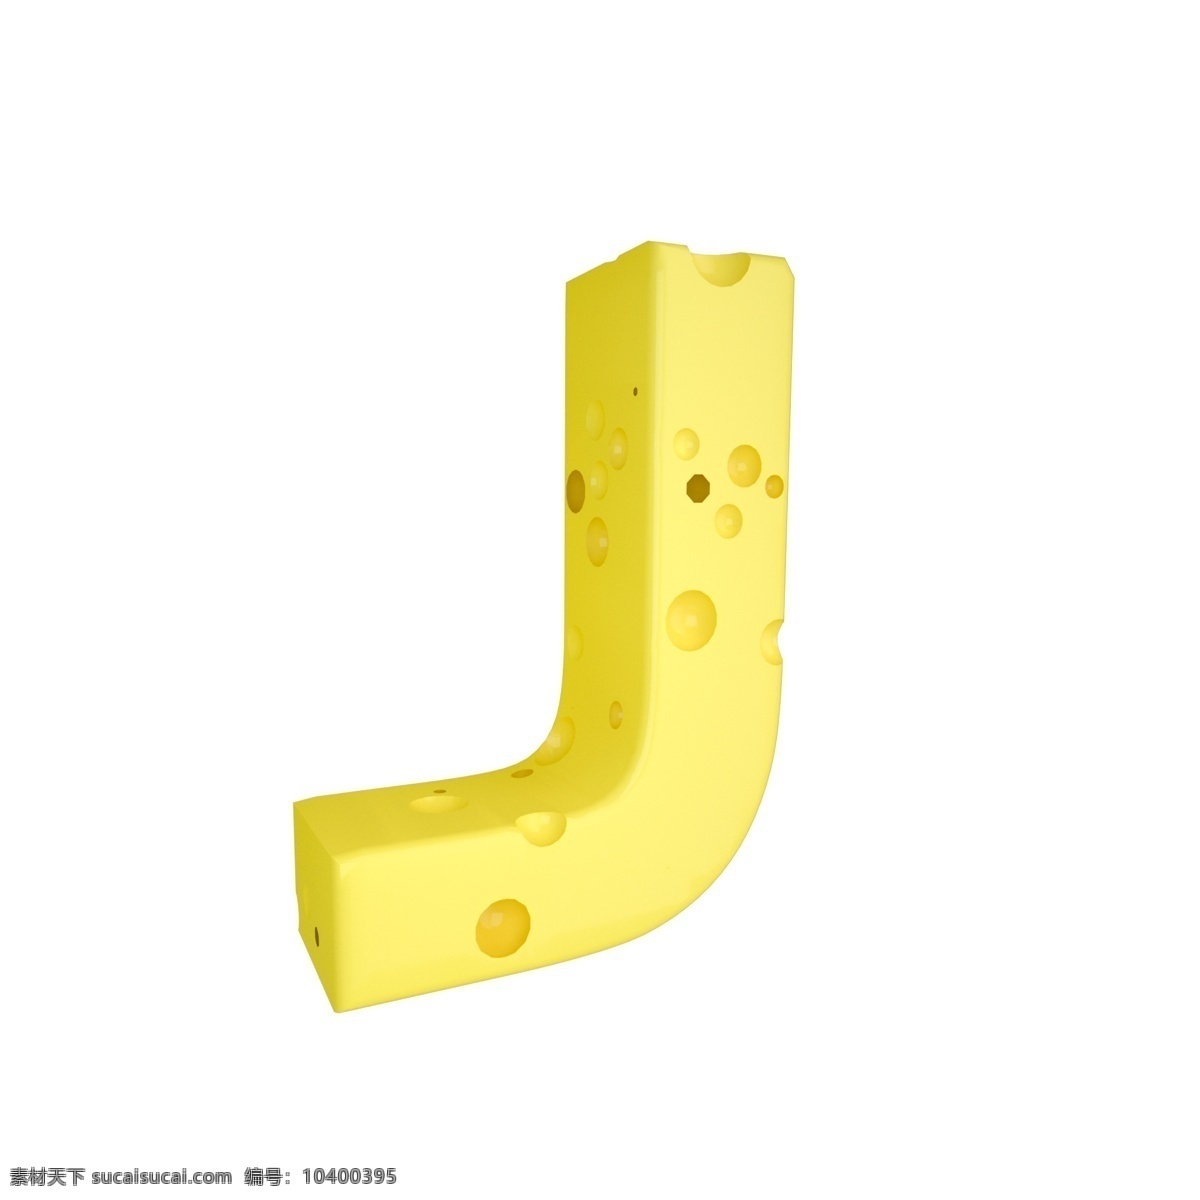 c4d 创意 奶酪 字母 j 装饰 3d 黄色 立体 食物 平面海报配图 电商淘宝装饰 可爱 柔和 字母j